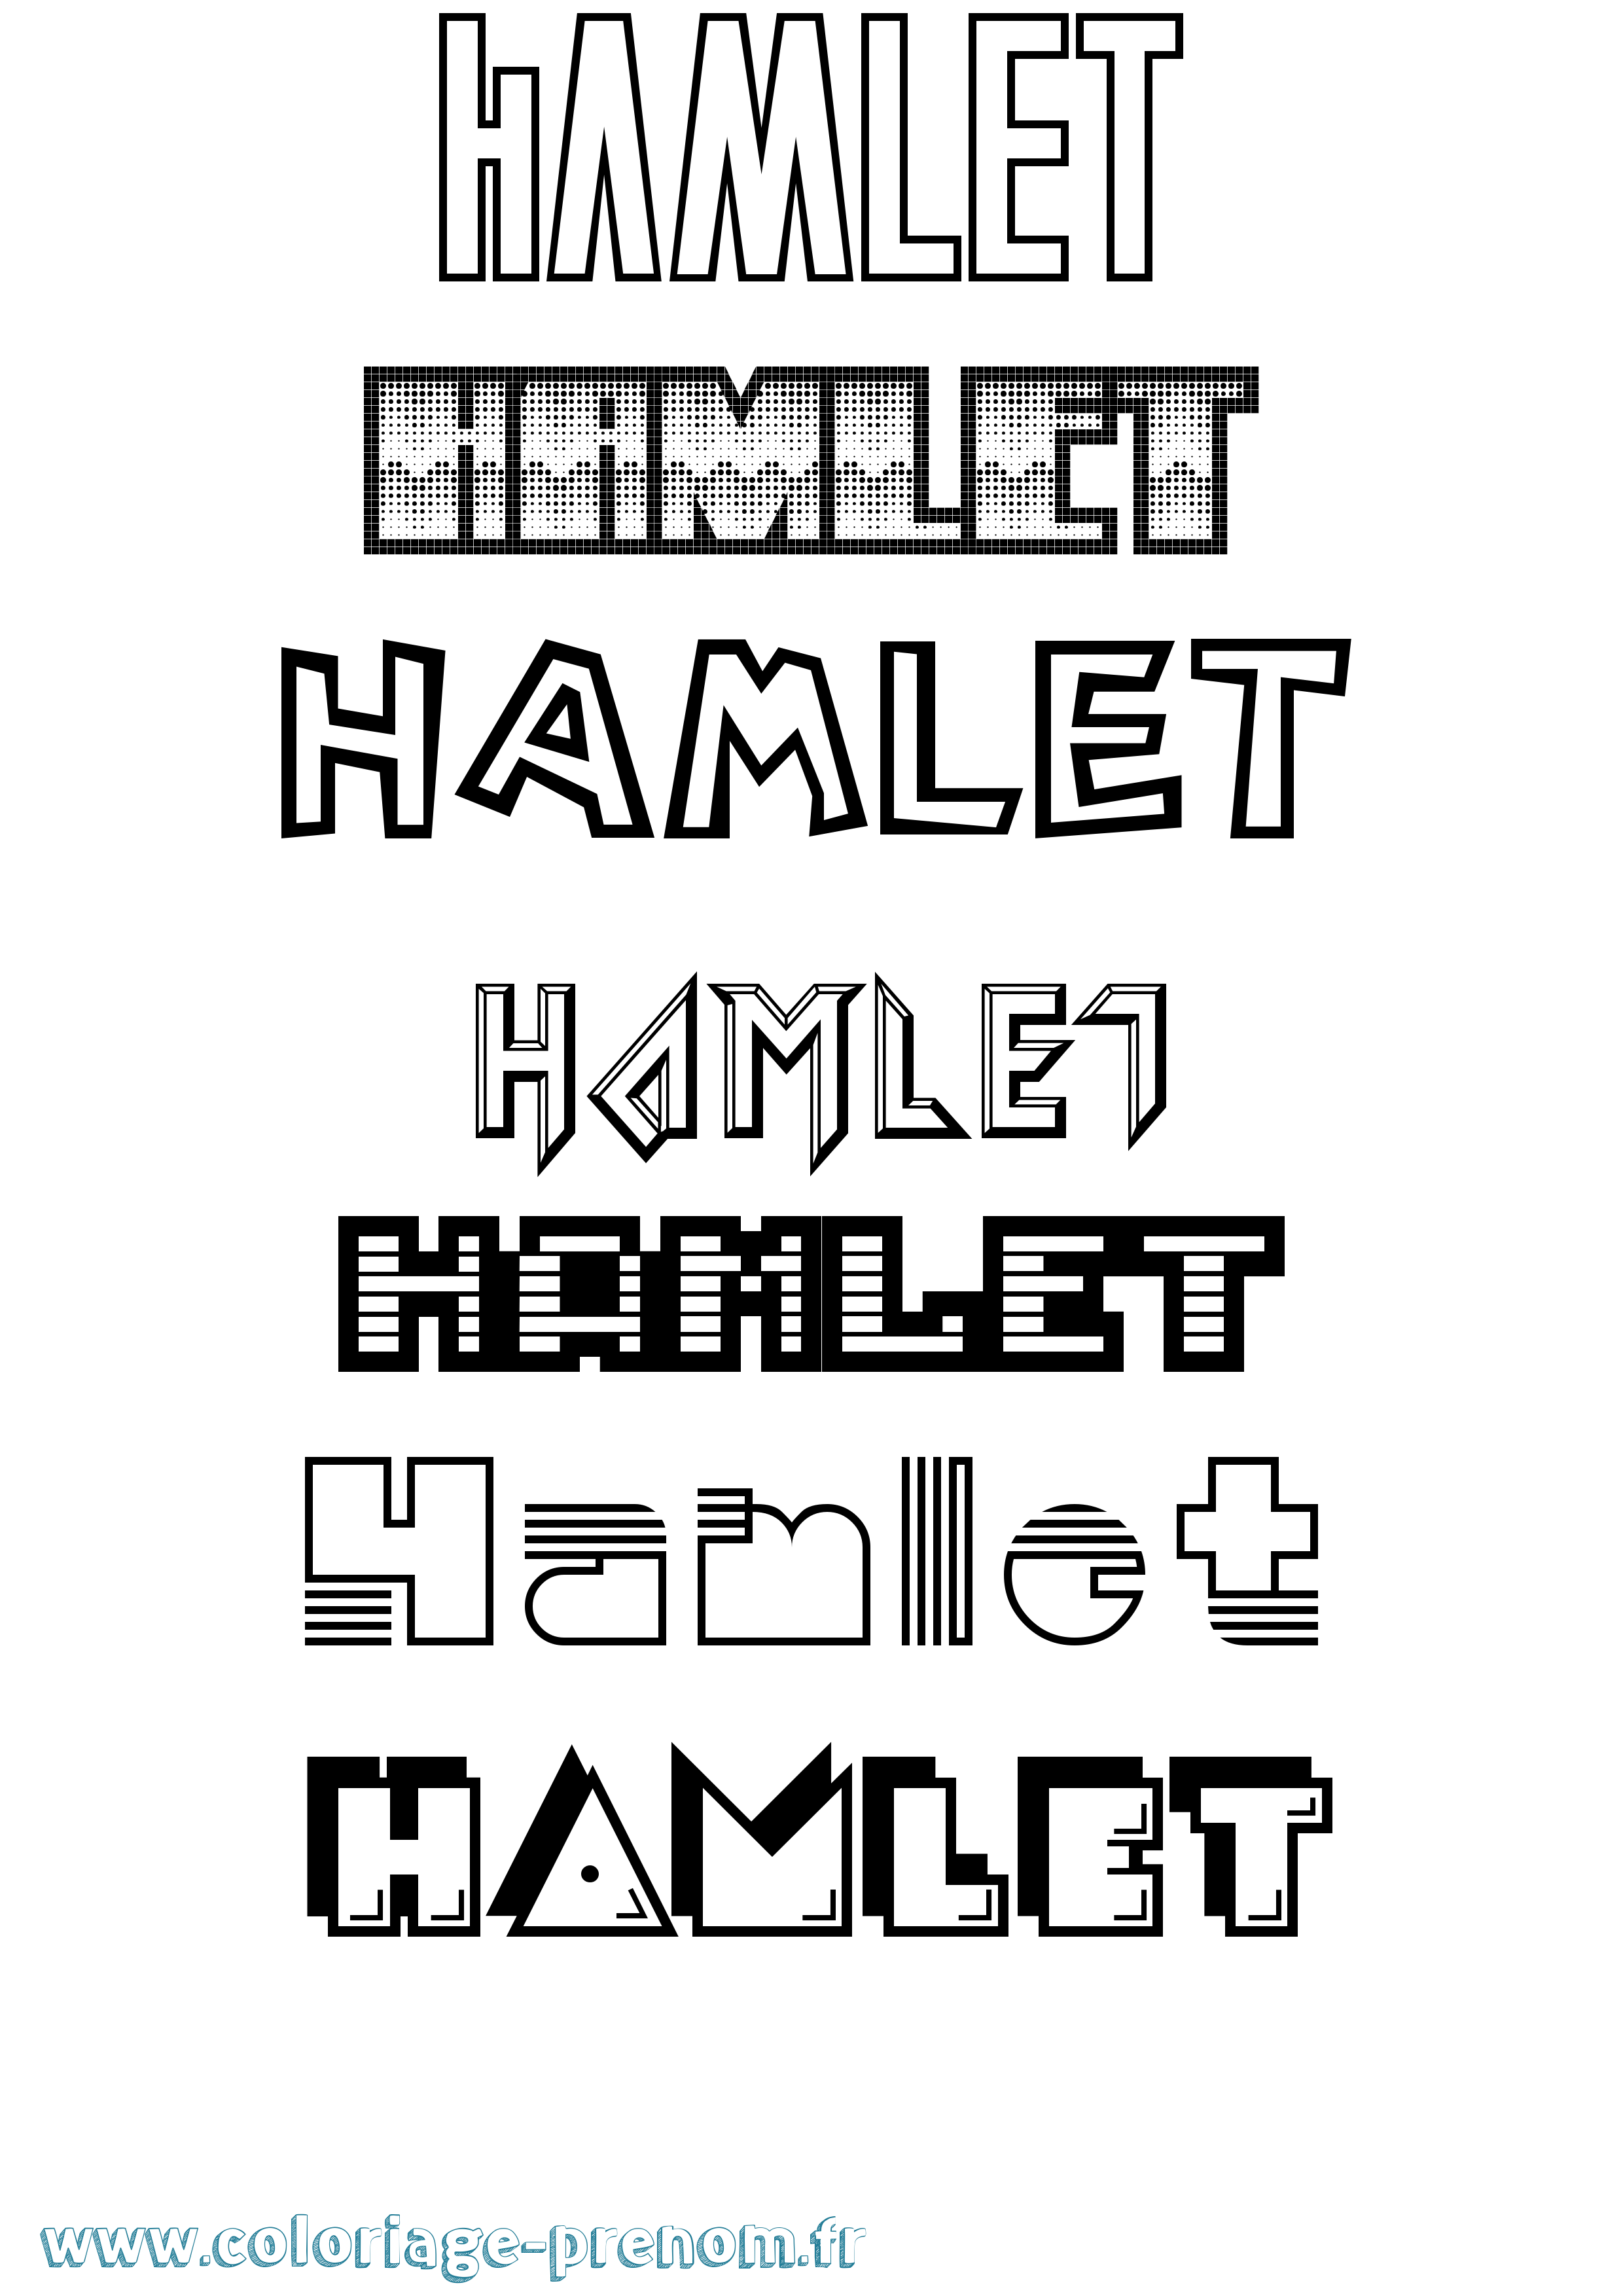 Coloriage prénom Hamlet Jeux Vidéos